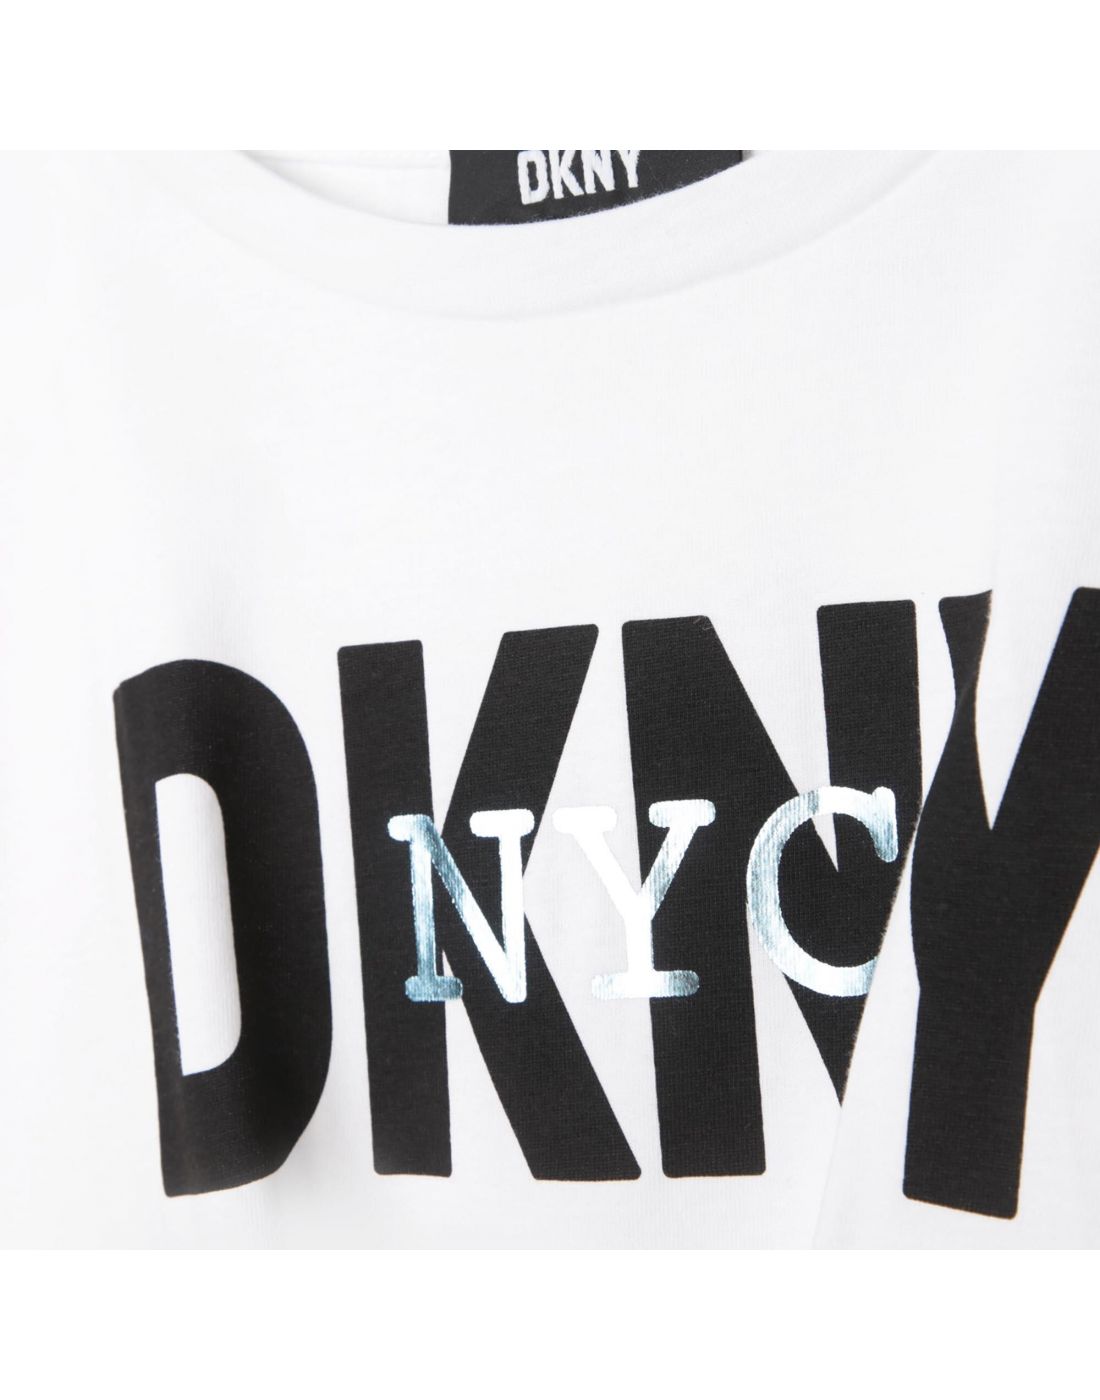 Παιδική Μπλούζα Με Print D.K.N.Y